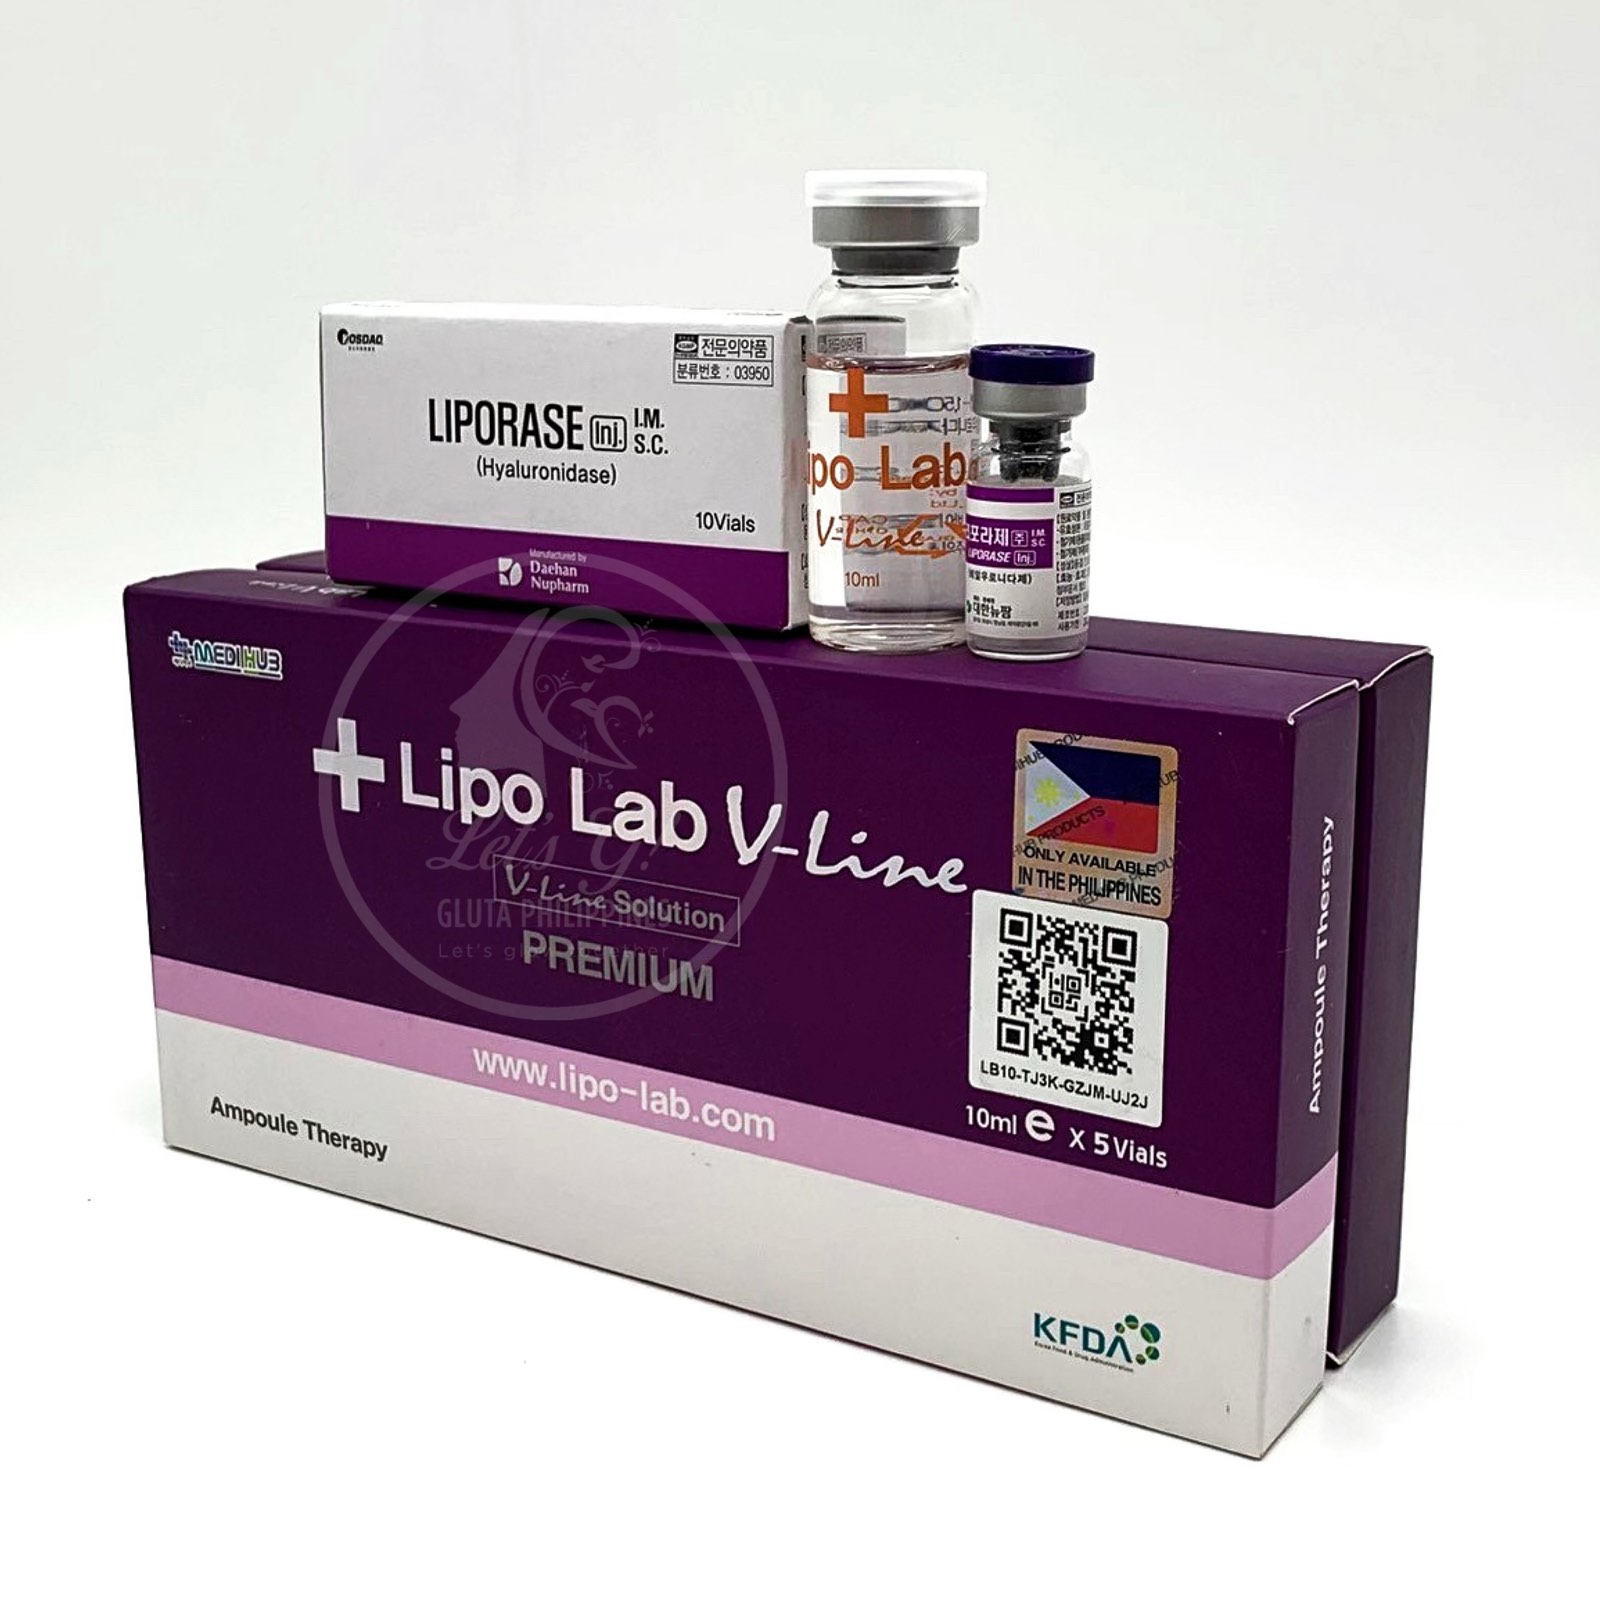 Lipo Lab V-Line Premium + Liporase 